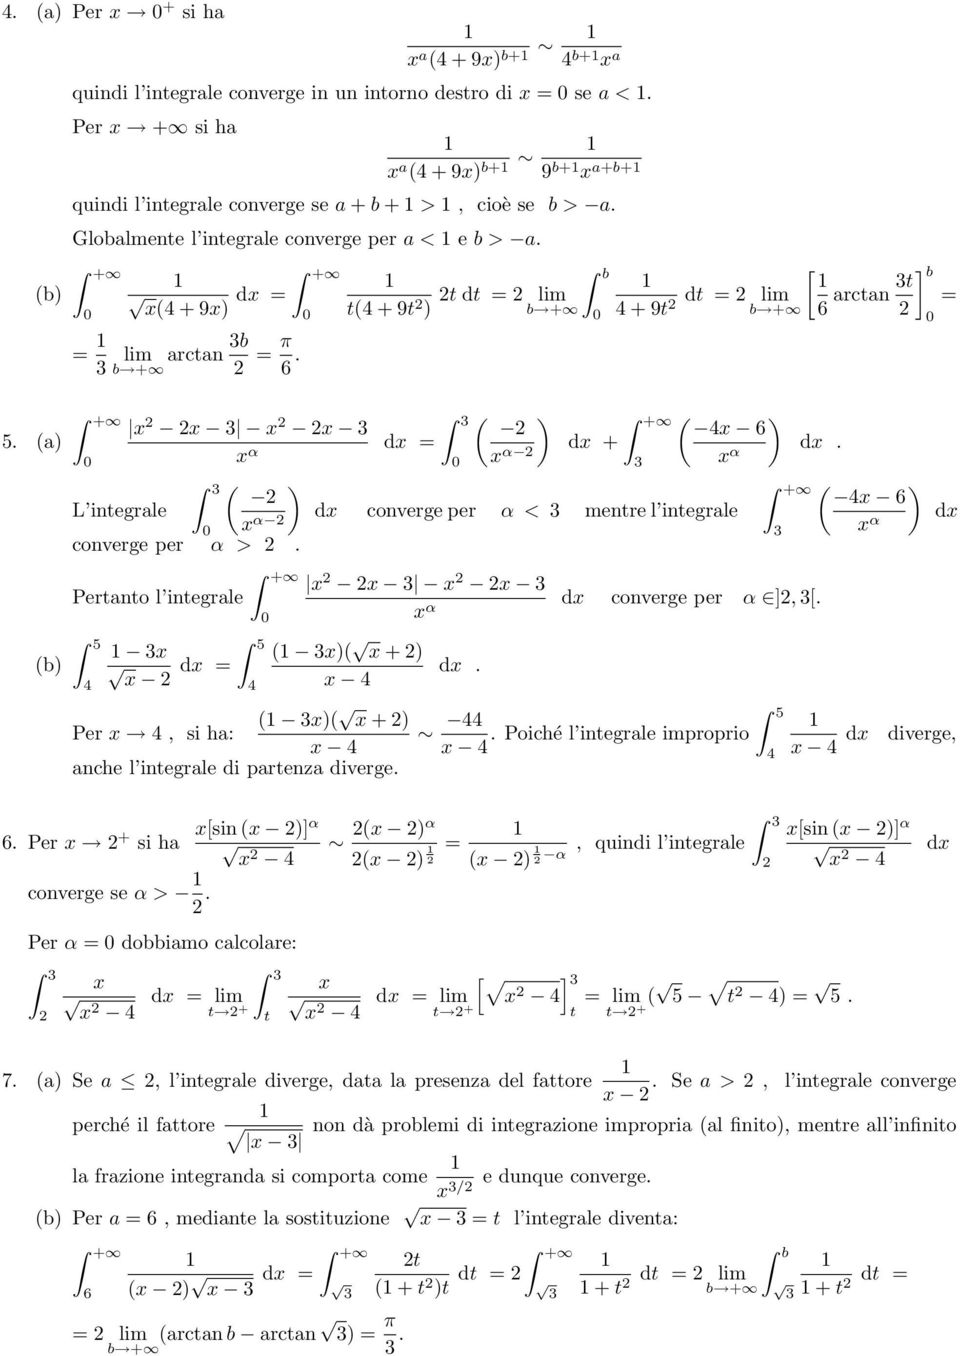 Pertanto l integrale 5 4 5 + d = 4 4 + Per 4, si ha: 4 anche l integrale di partenza diverge. α d + 4 6 d converge per α < mentre l integrale α α d converge per α ],. d. 44 5.